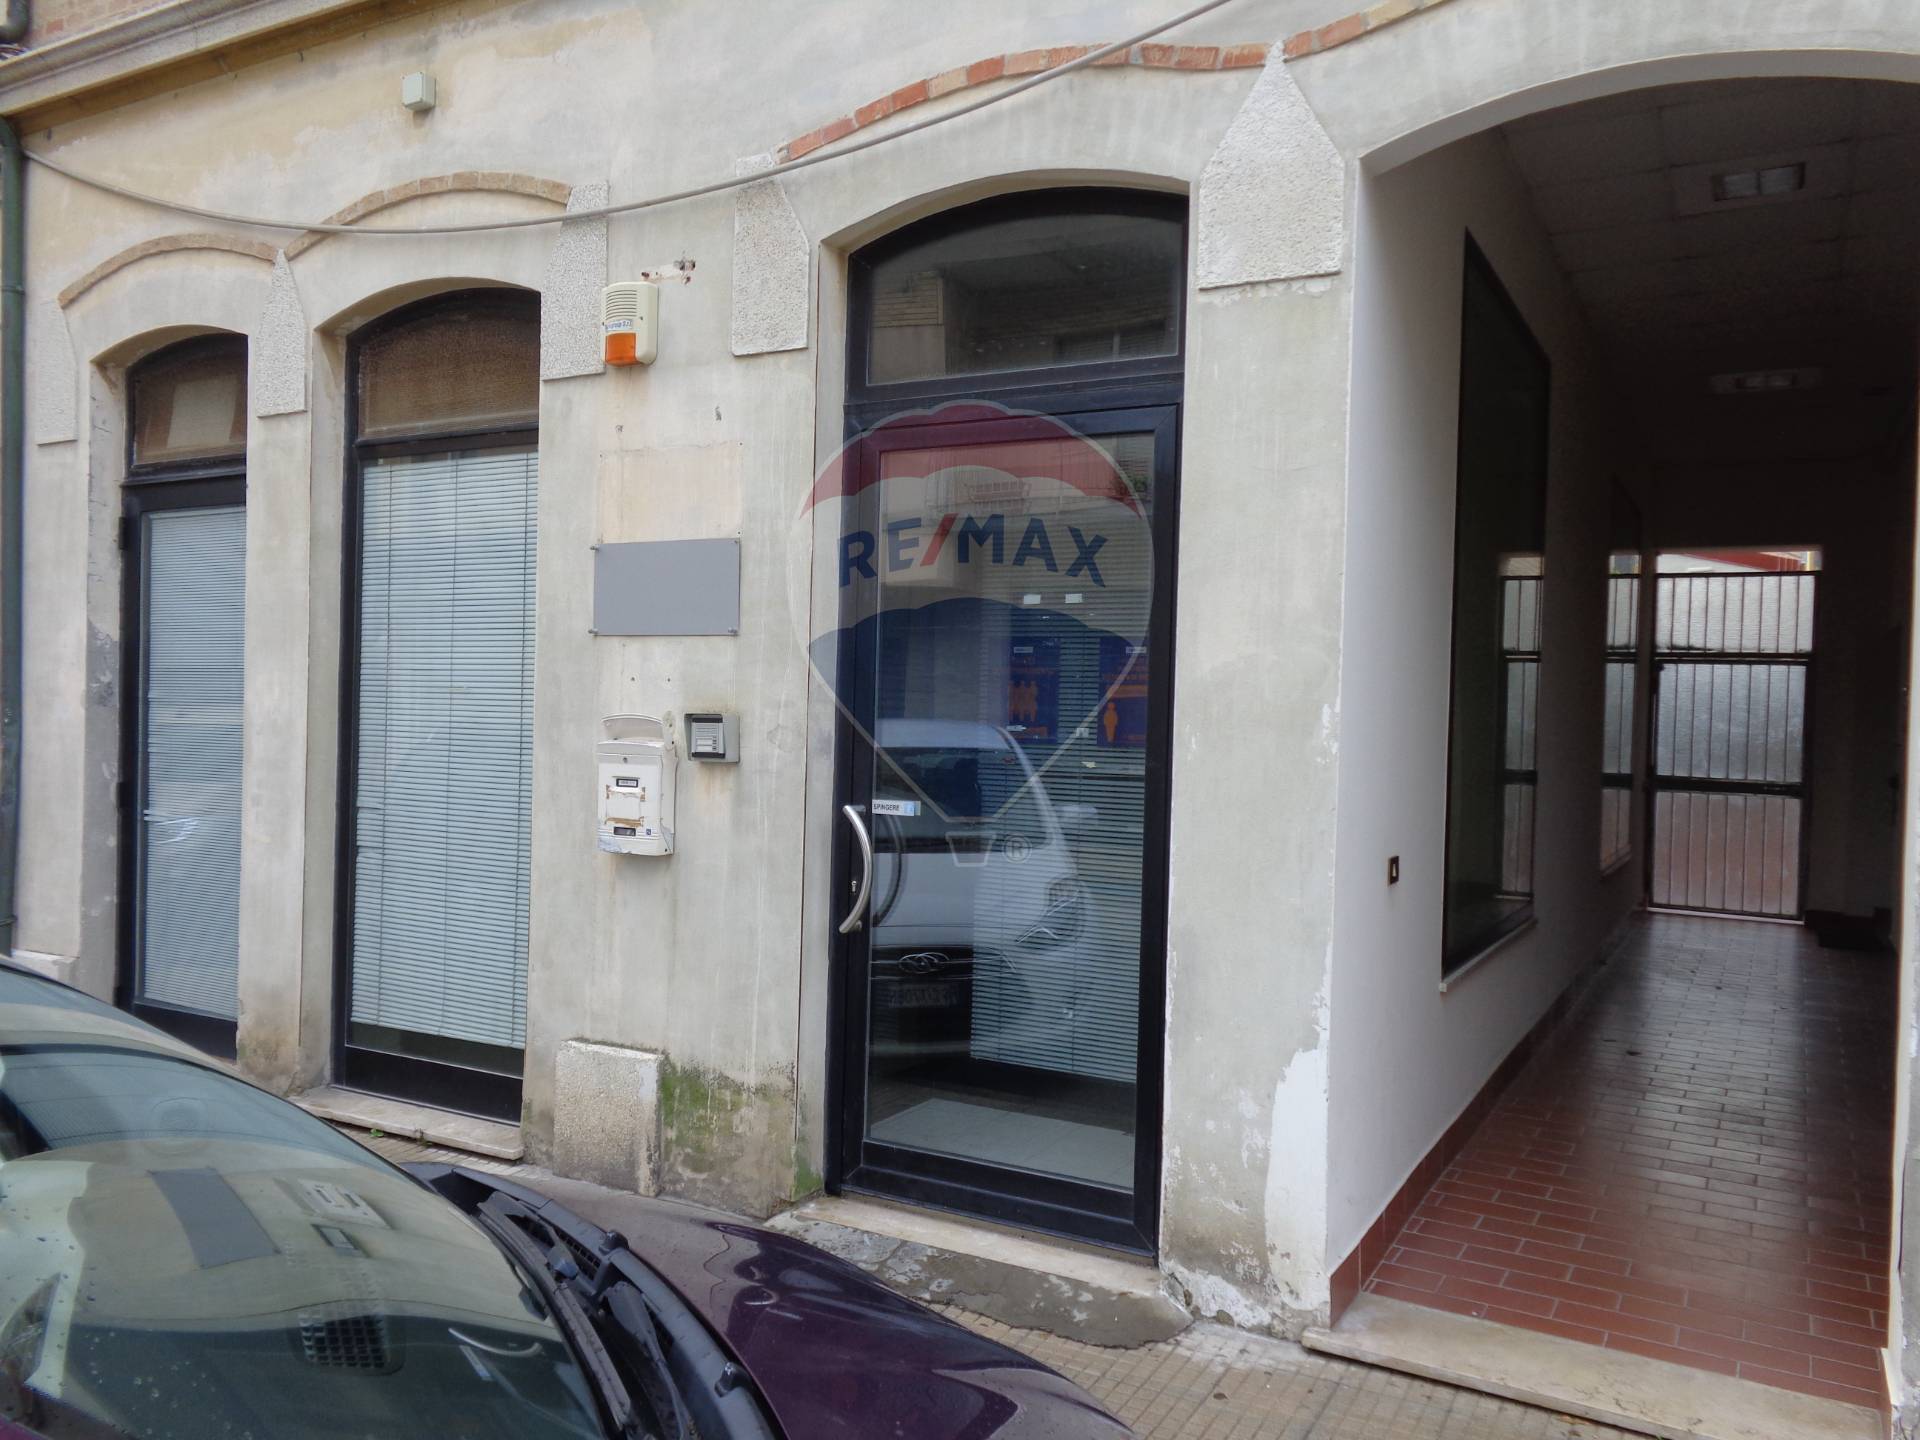 Ufficio / Studio in affitto a Falconara Marittima, 9999 locali, zona Zona: Centro, prezzo € 1.300 | CambioCasa.it